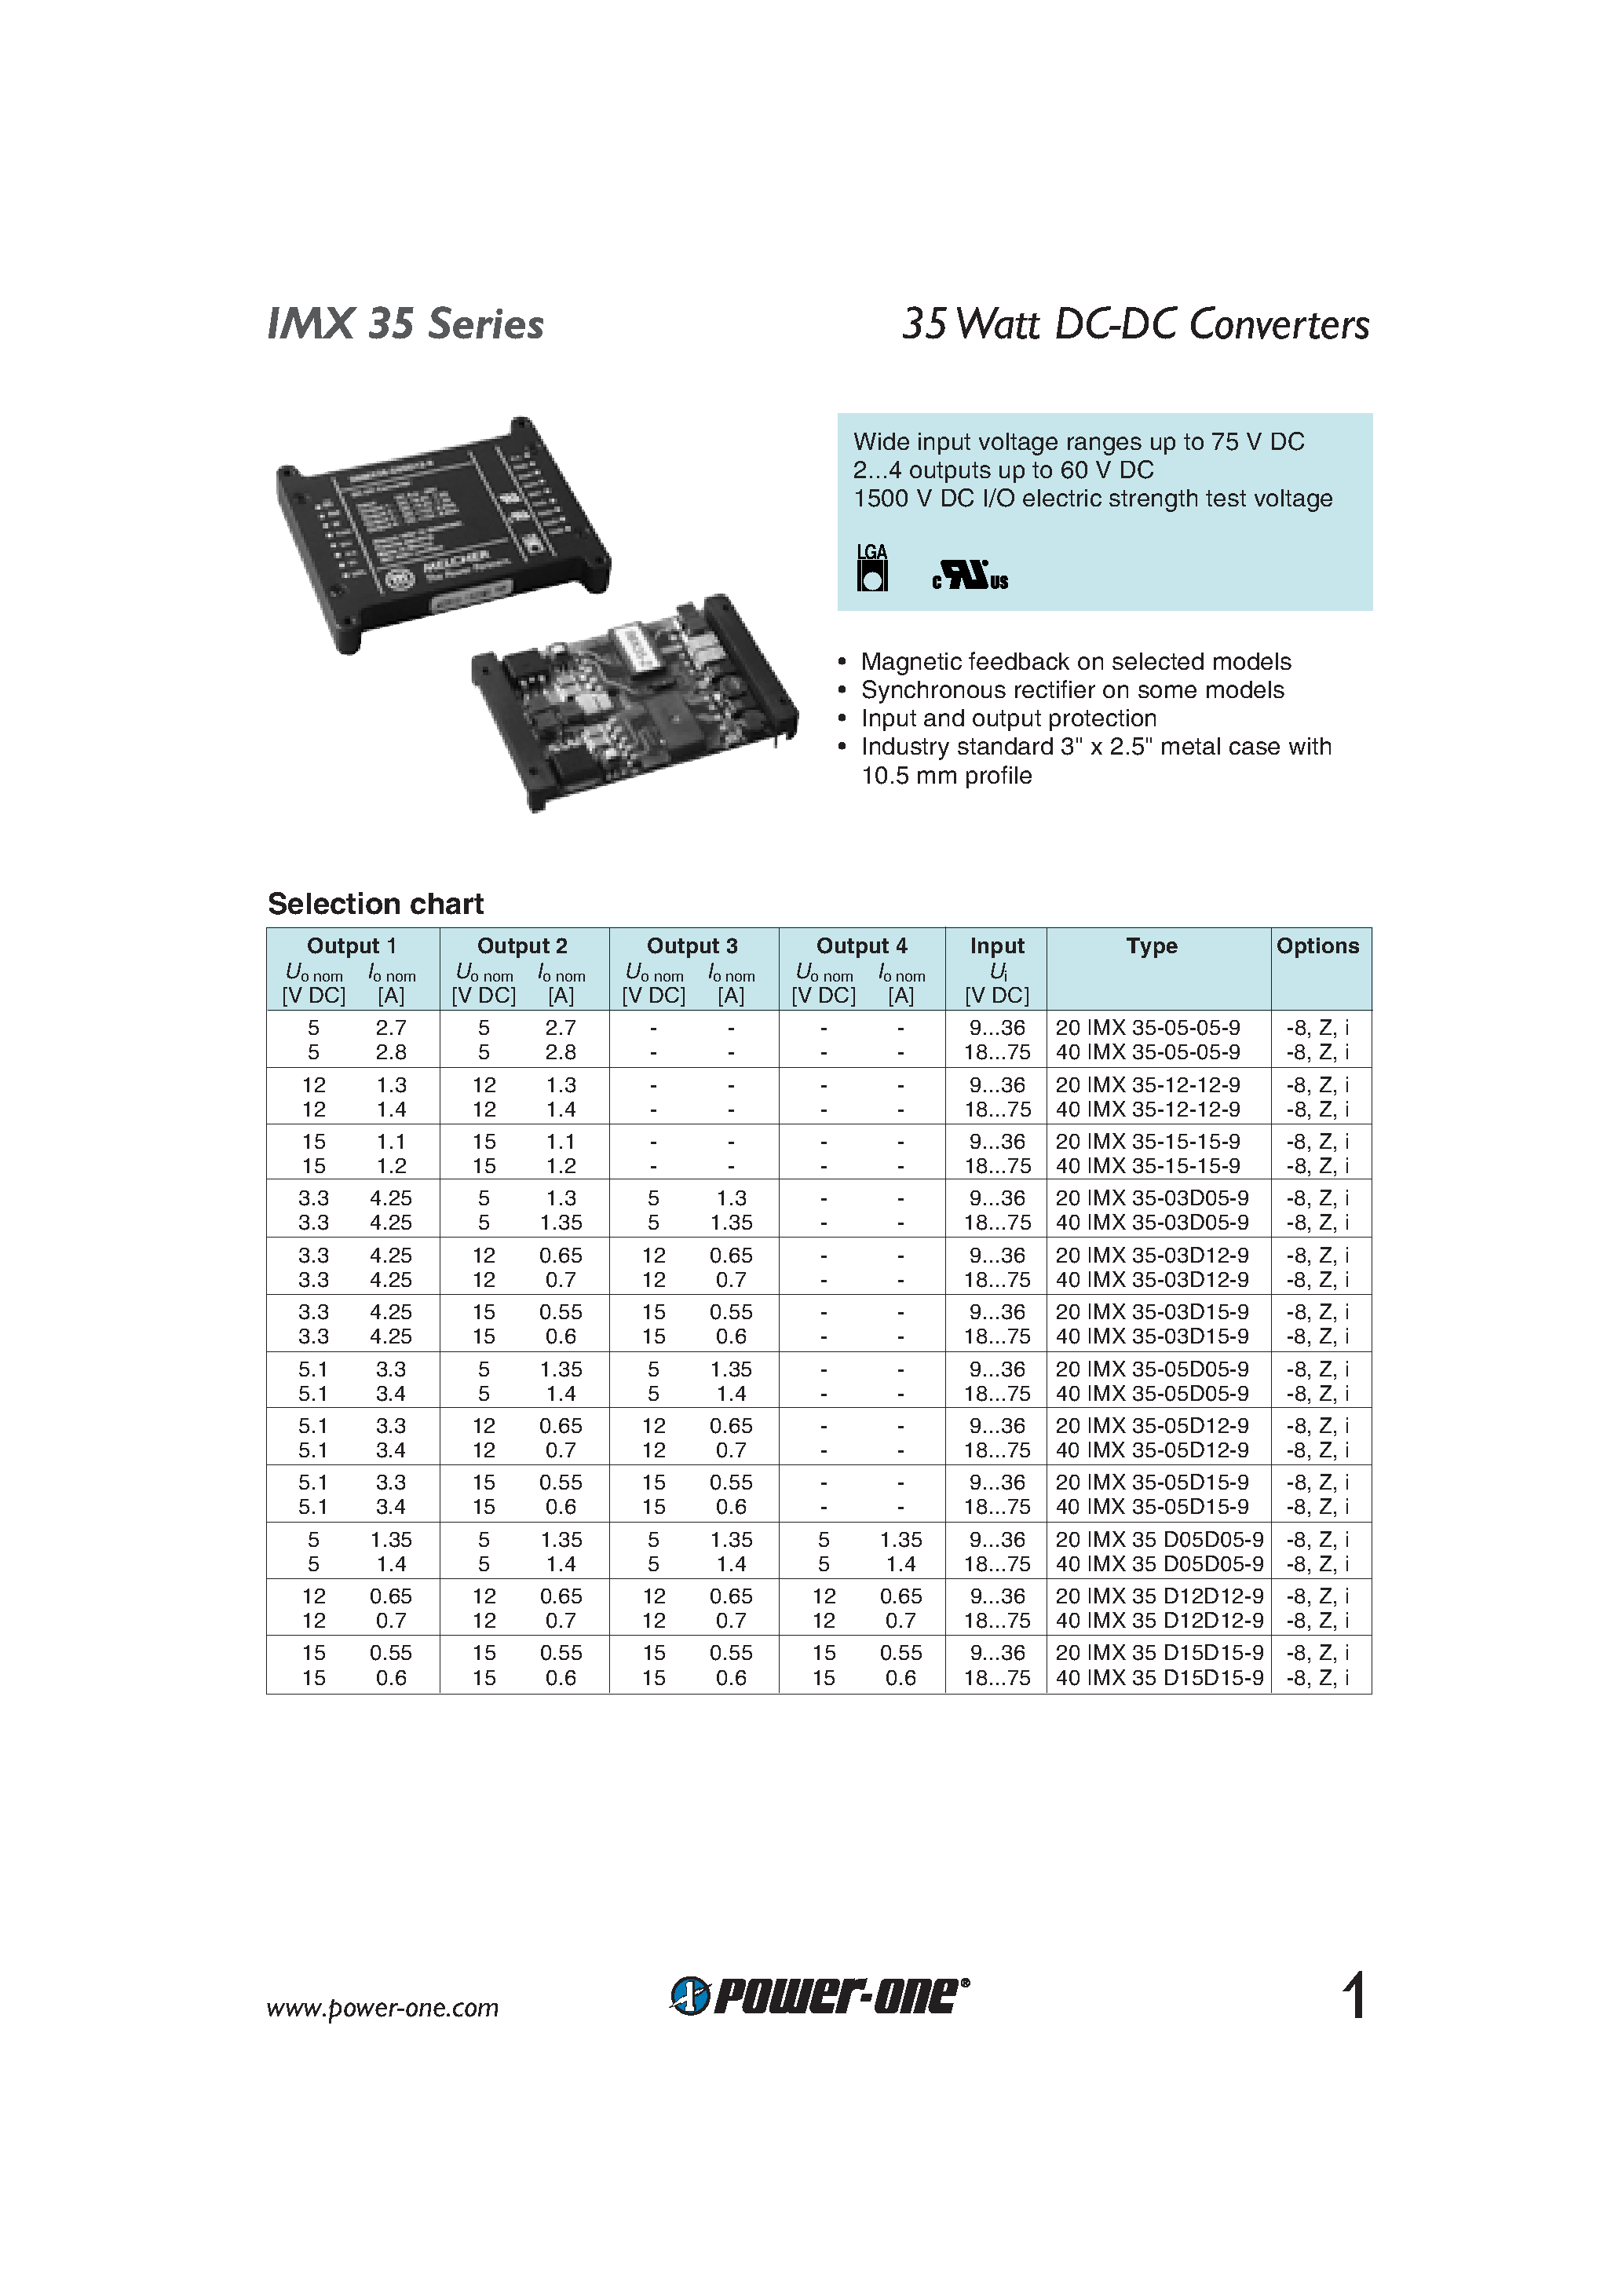 Datasheet 40IMX35-D15D15-9 - 35 Watt DC-DC Converters page 1